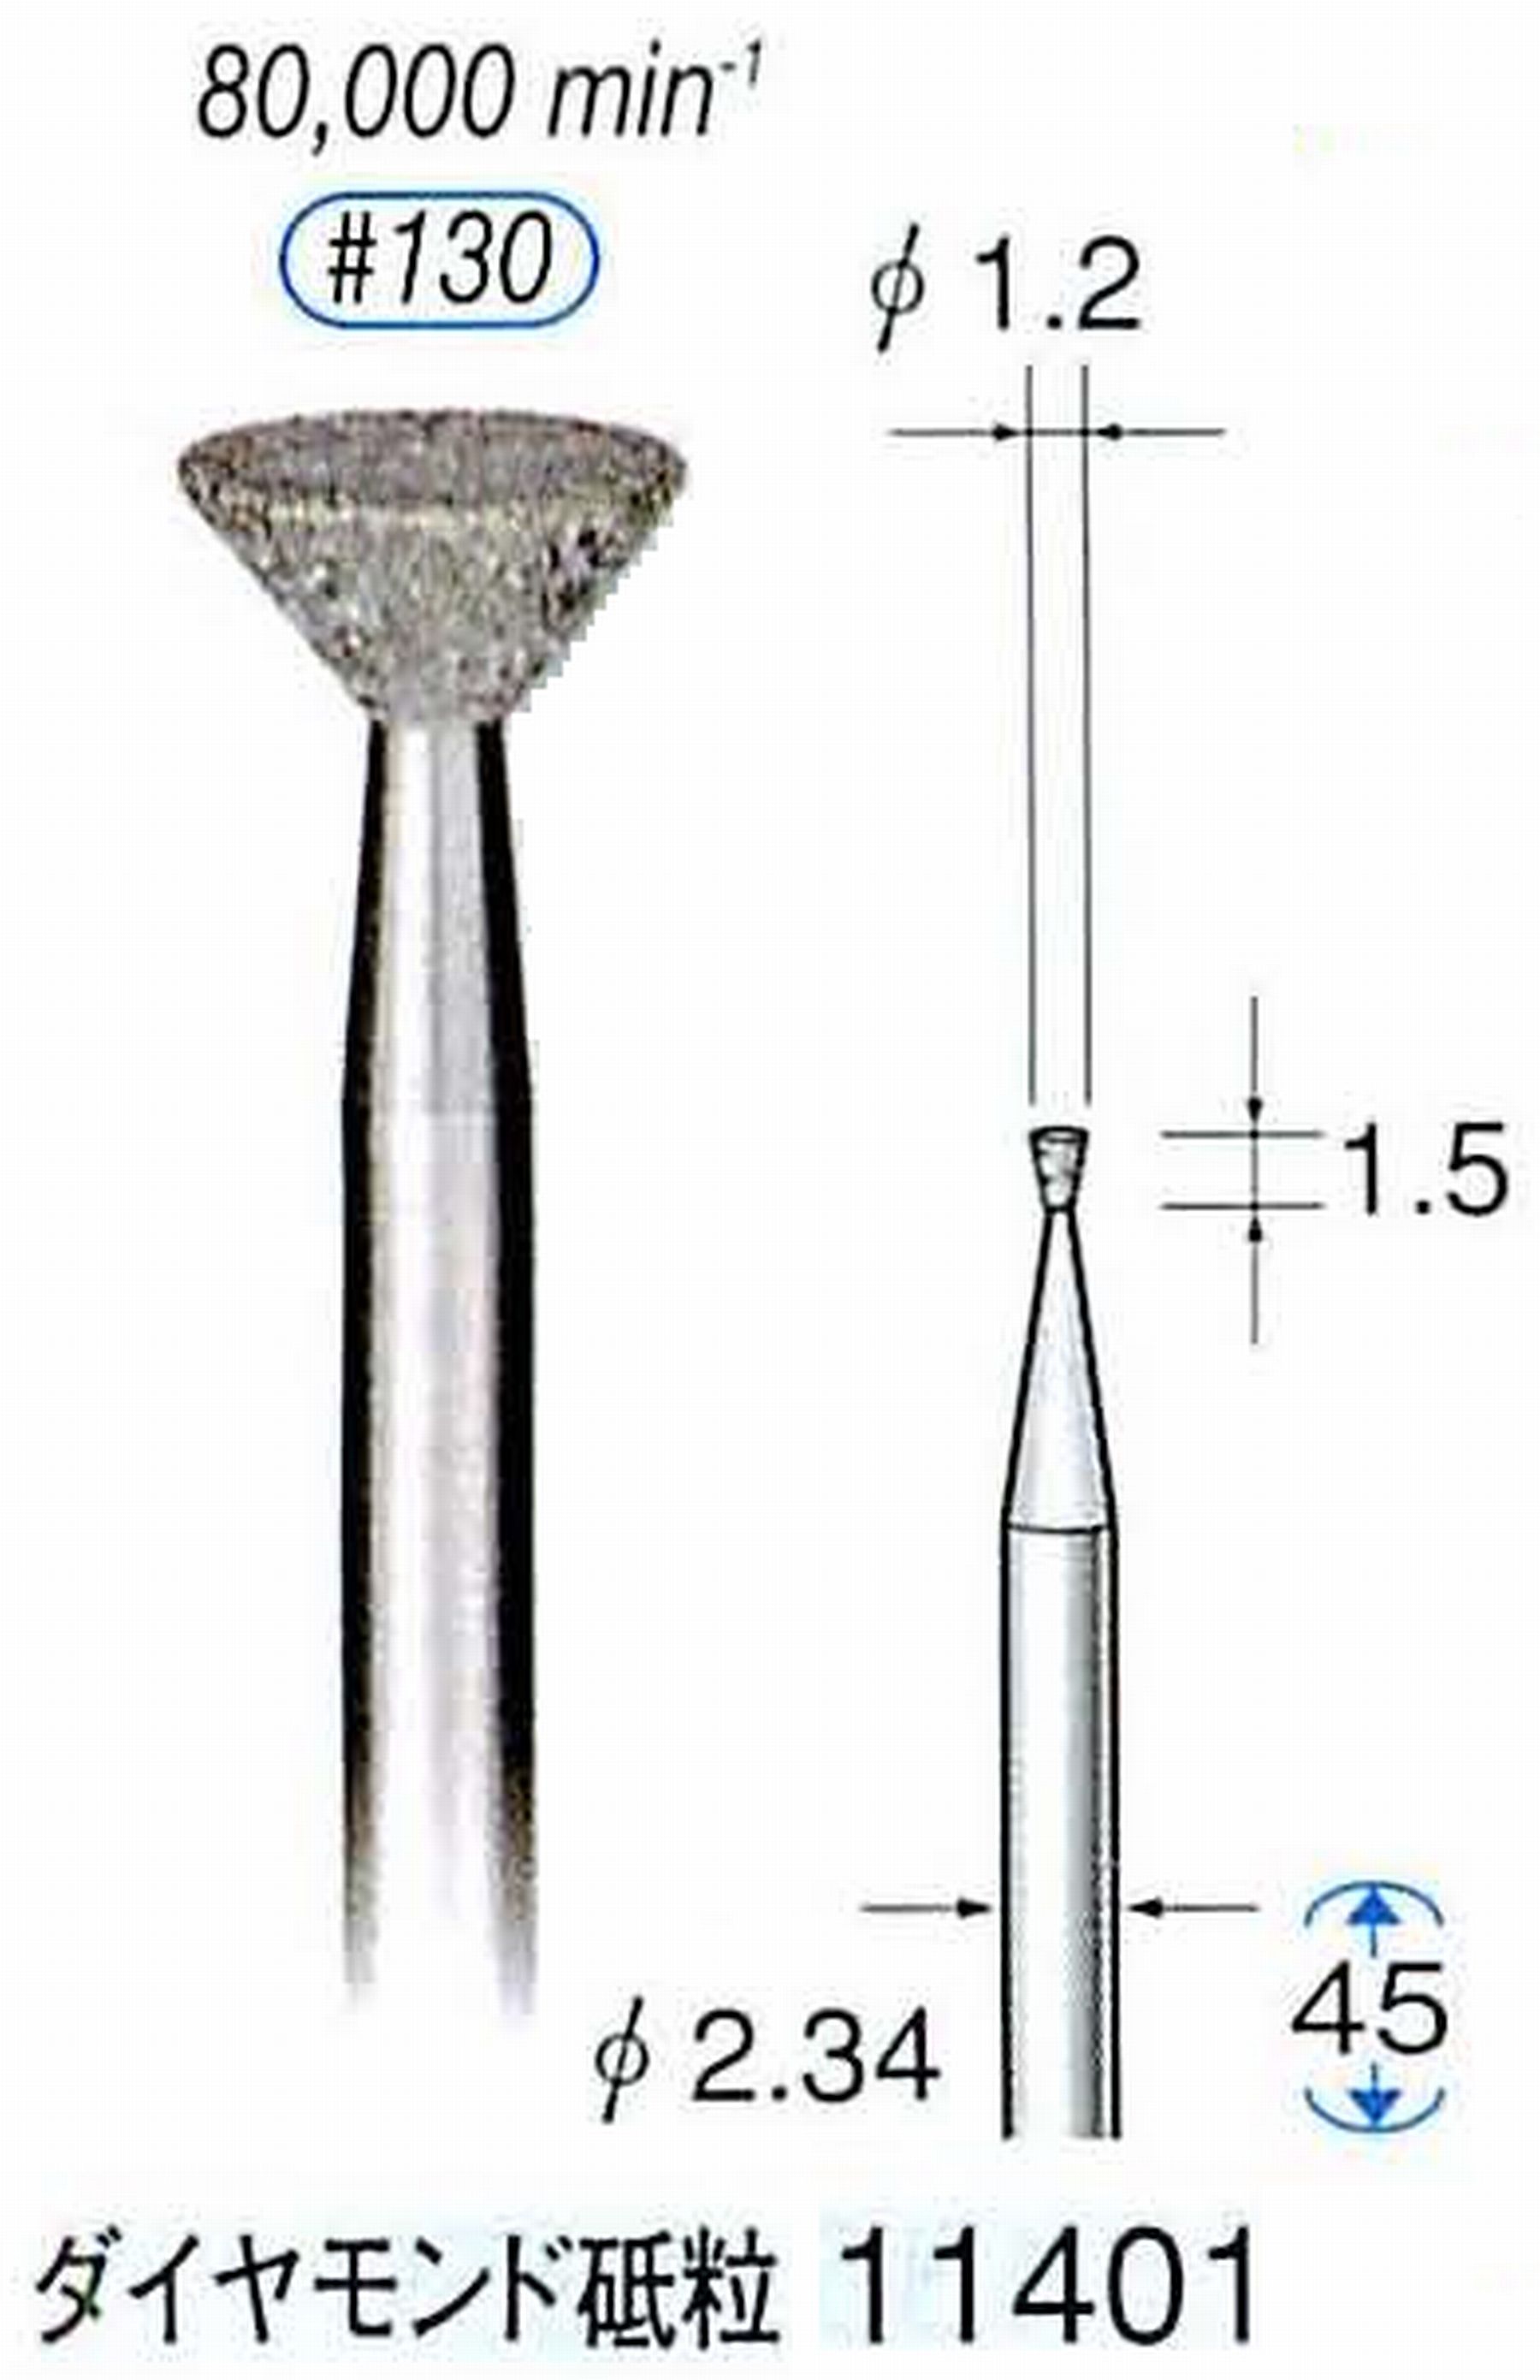 ナカニシ/NAKANISHI 電着ダイヤモンドバー ダイヤモンド砥粒 軸径(シャンク)φ2.34mm 11401